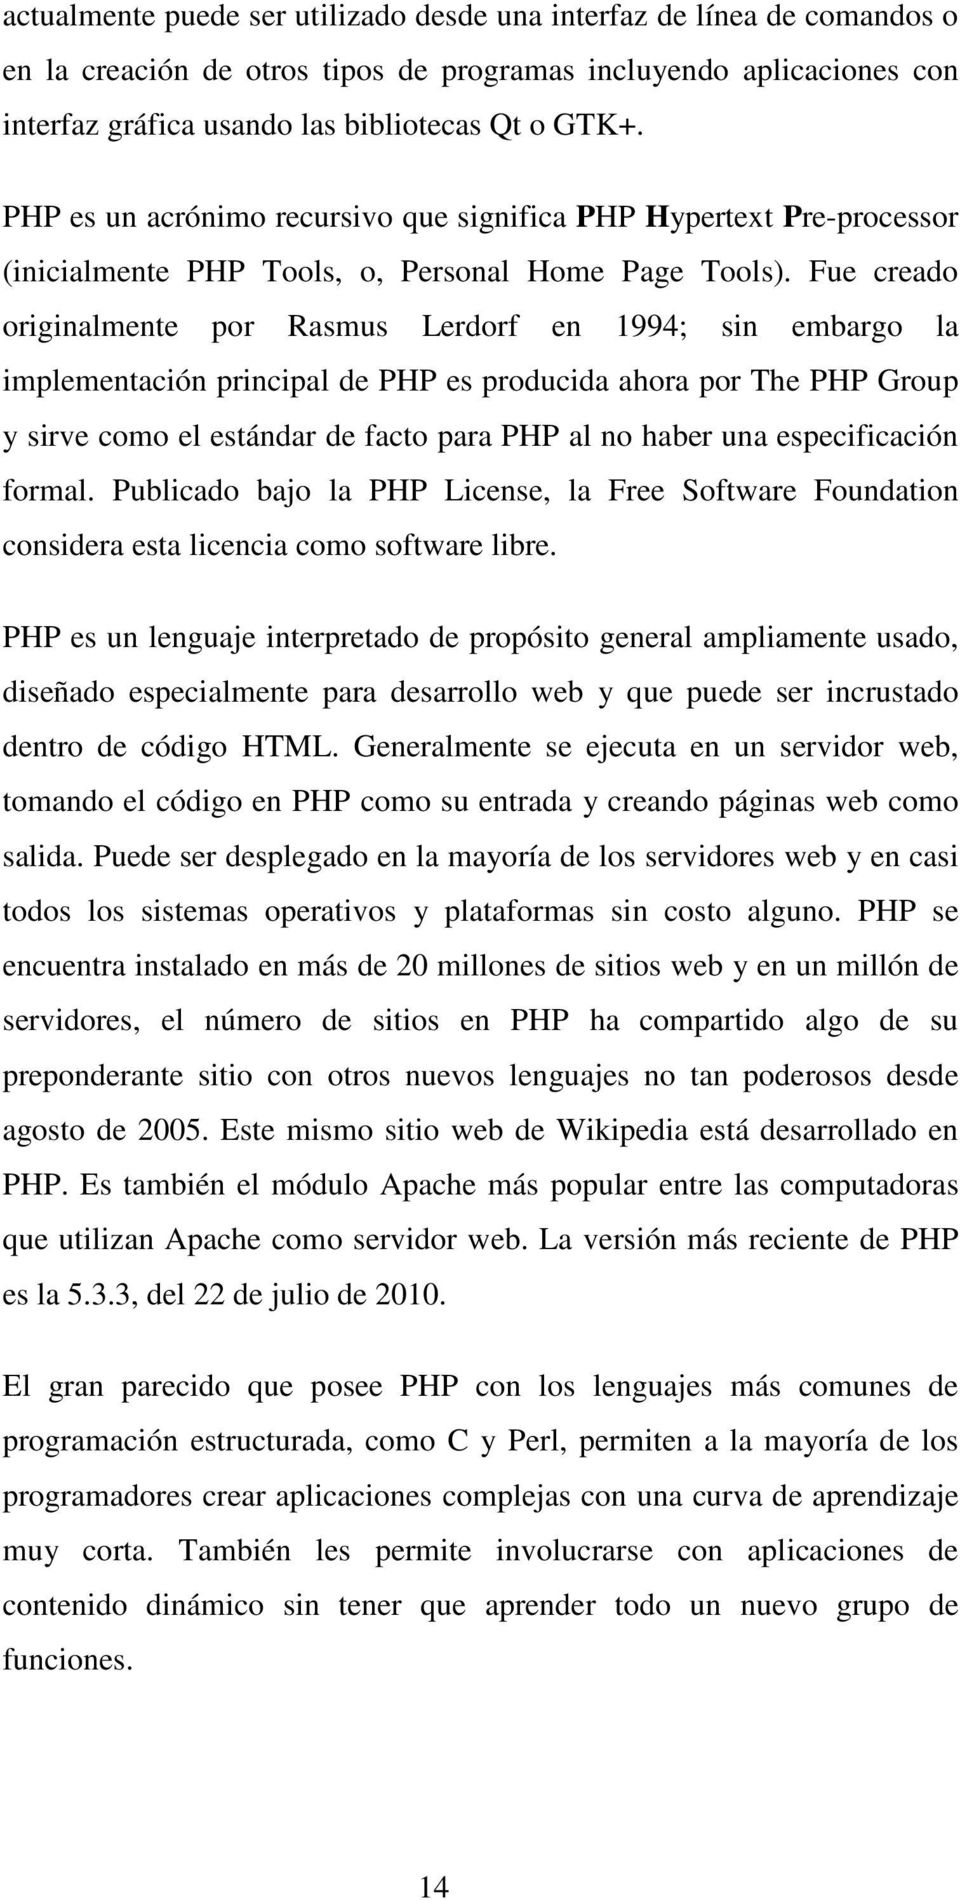 Fue creado originalmente por Rasmus Lerdorf en 1994; sin embargo la implementación principal de PHP es producida ahora por The PHP Group y sirve como el estándar de facto para PHP al no haber una